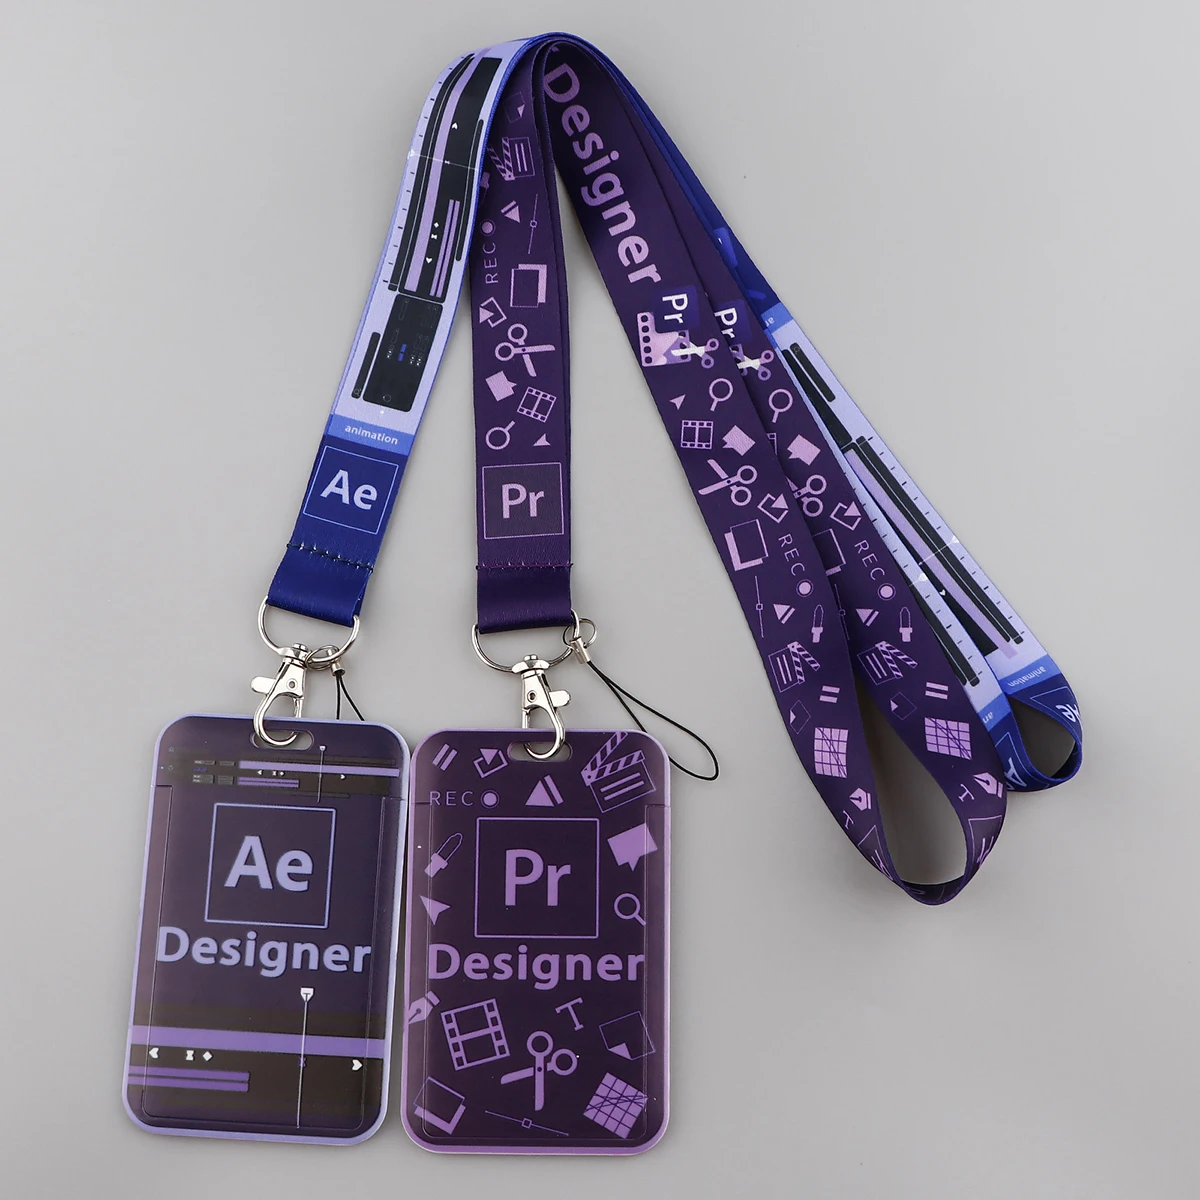 Design Software Pr Ps Premiere Neck Strap Lanyard for Keys Keychain ID Badge Holder Card Cover Keyring Accessories Designer Gift images - 6